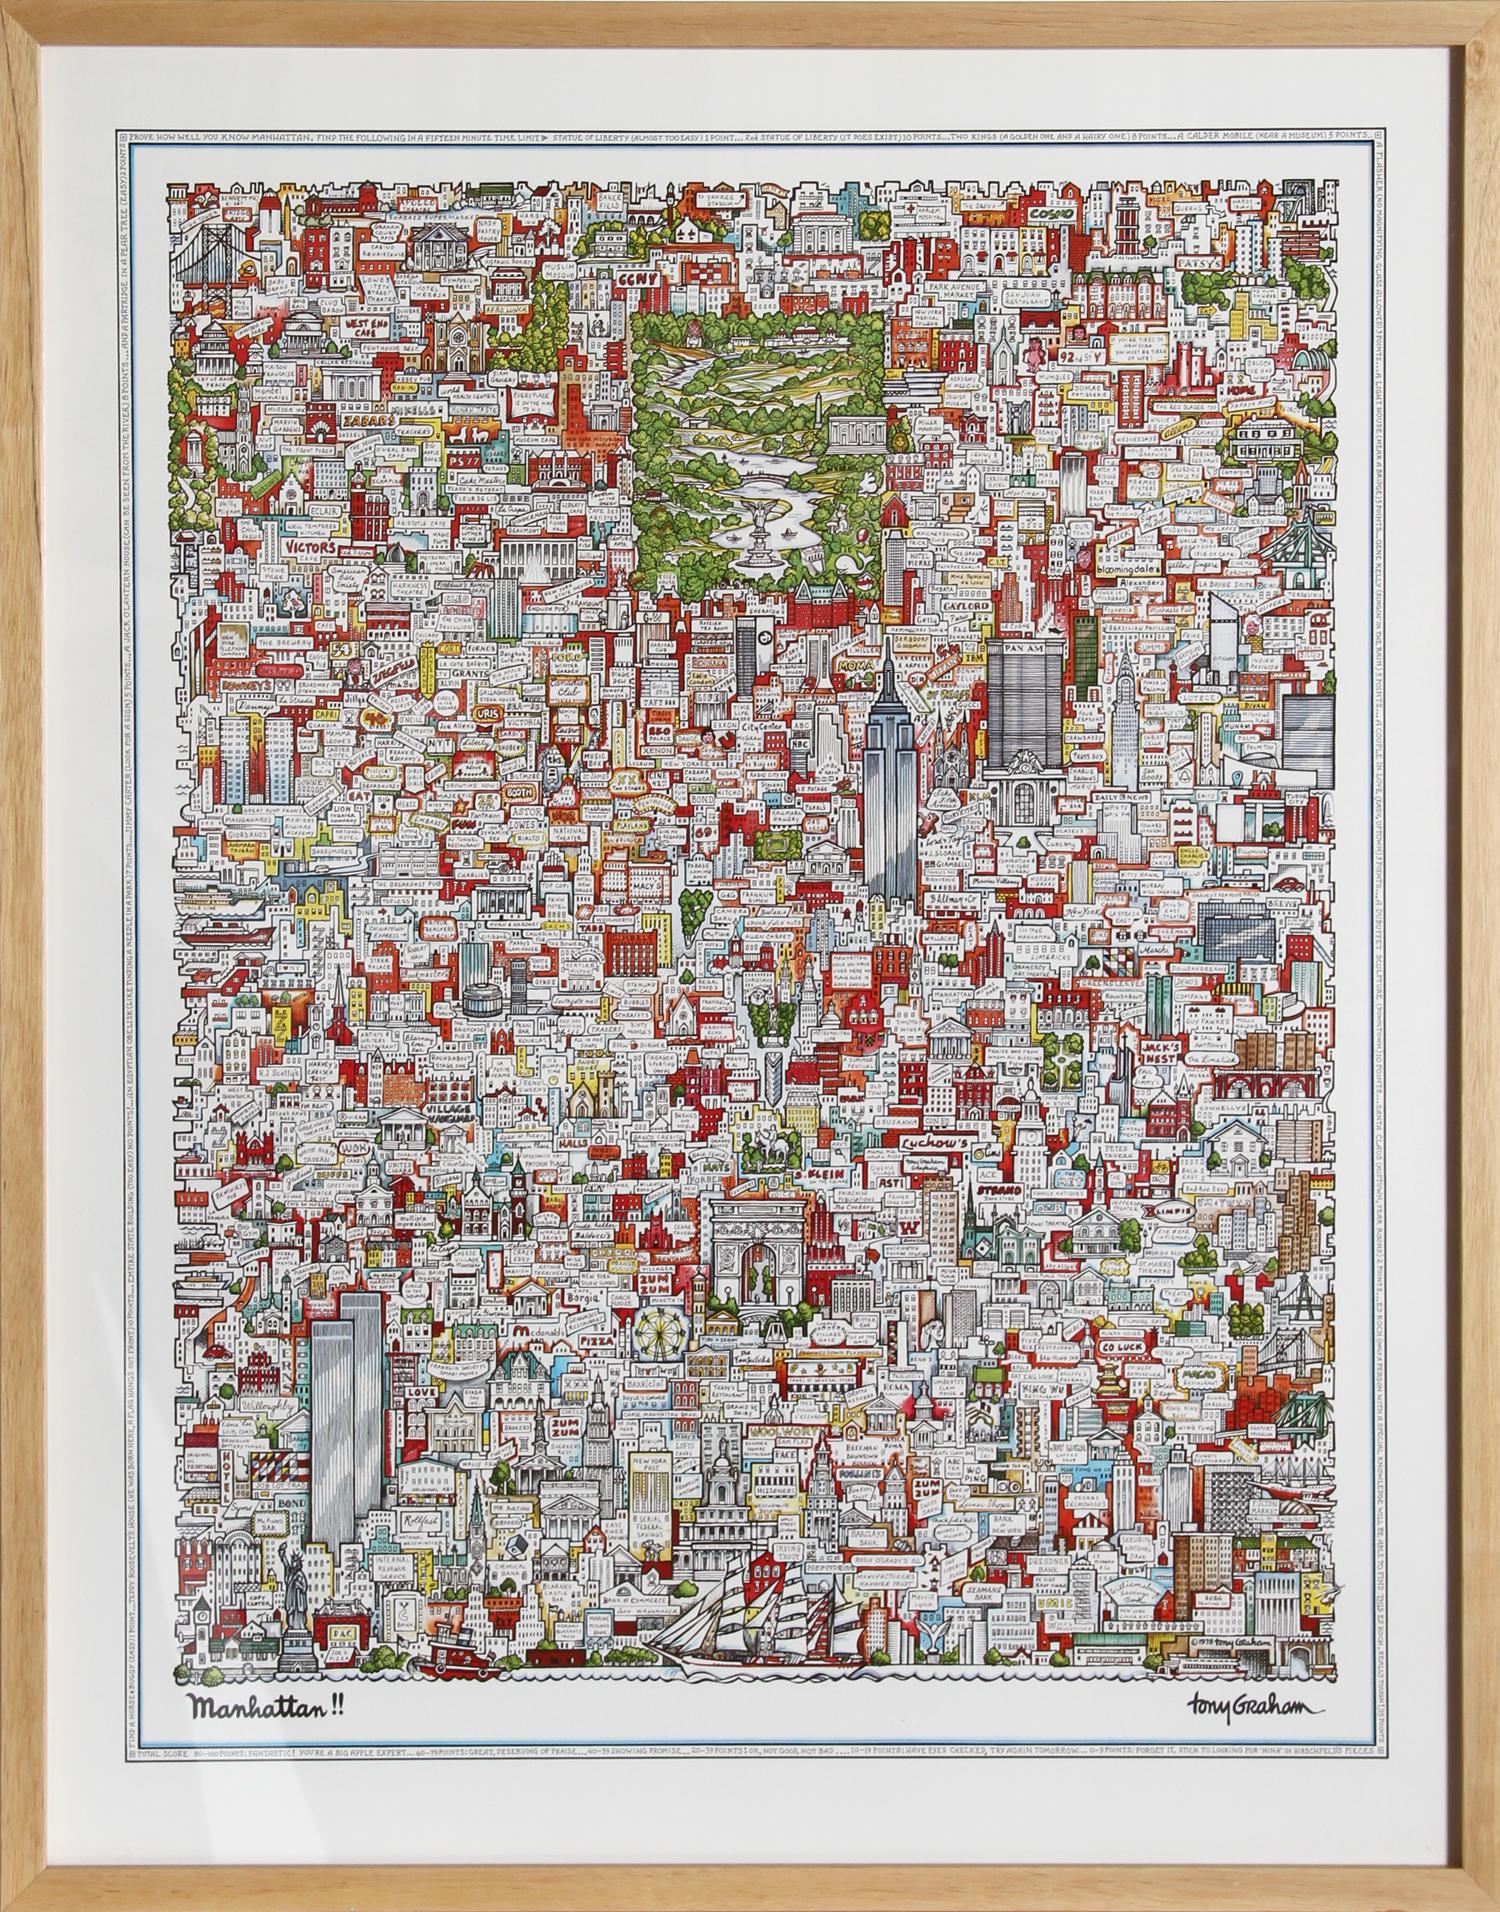 Tony Graham ist ein Grafikkünstler, der für seine Zeichnungen und Drucke von New York City bekannt ist. "Manhattan" ist das ikonischste und am meisten gesammelte Bild des Künstlers, das 1978 veröffentlicht wurde. Schön gerahmt.

Manhattan!! von Tony